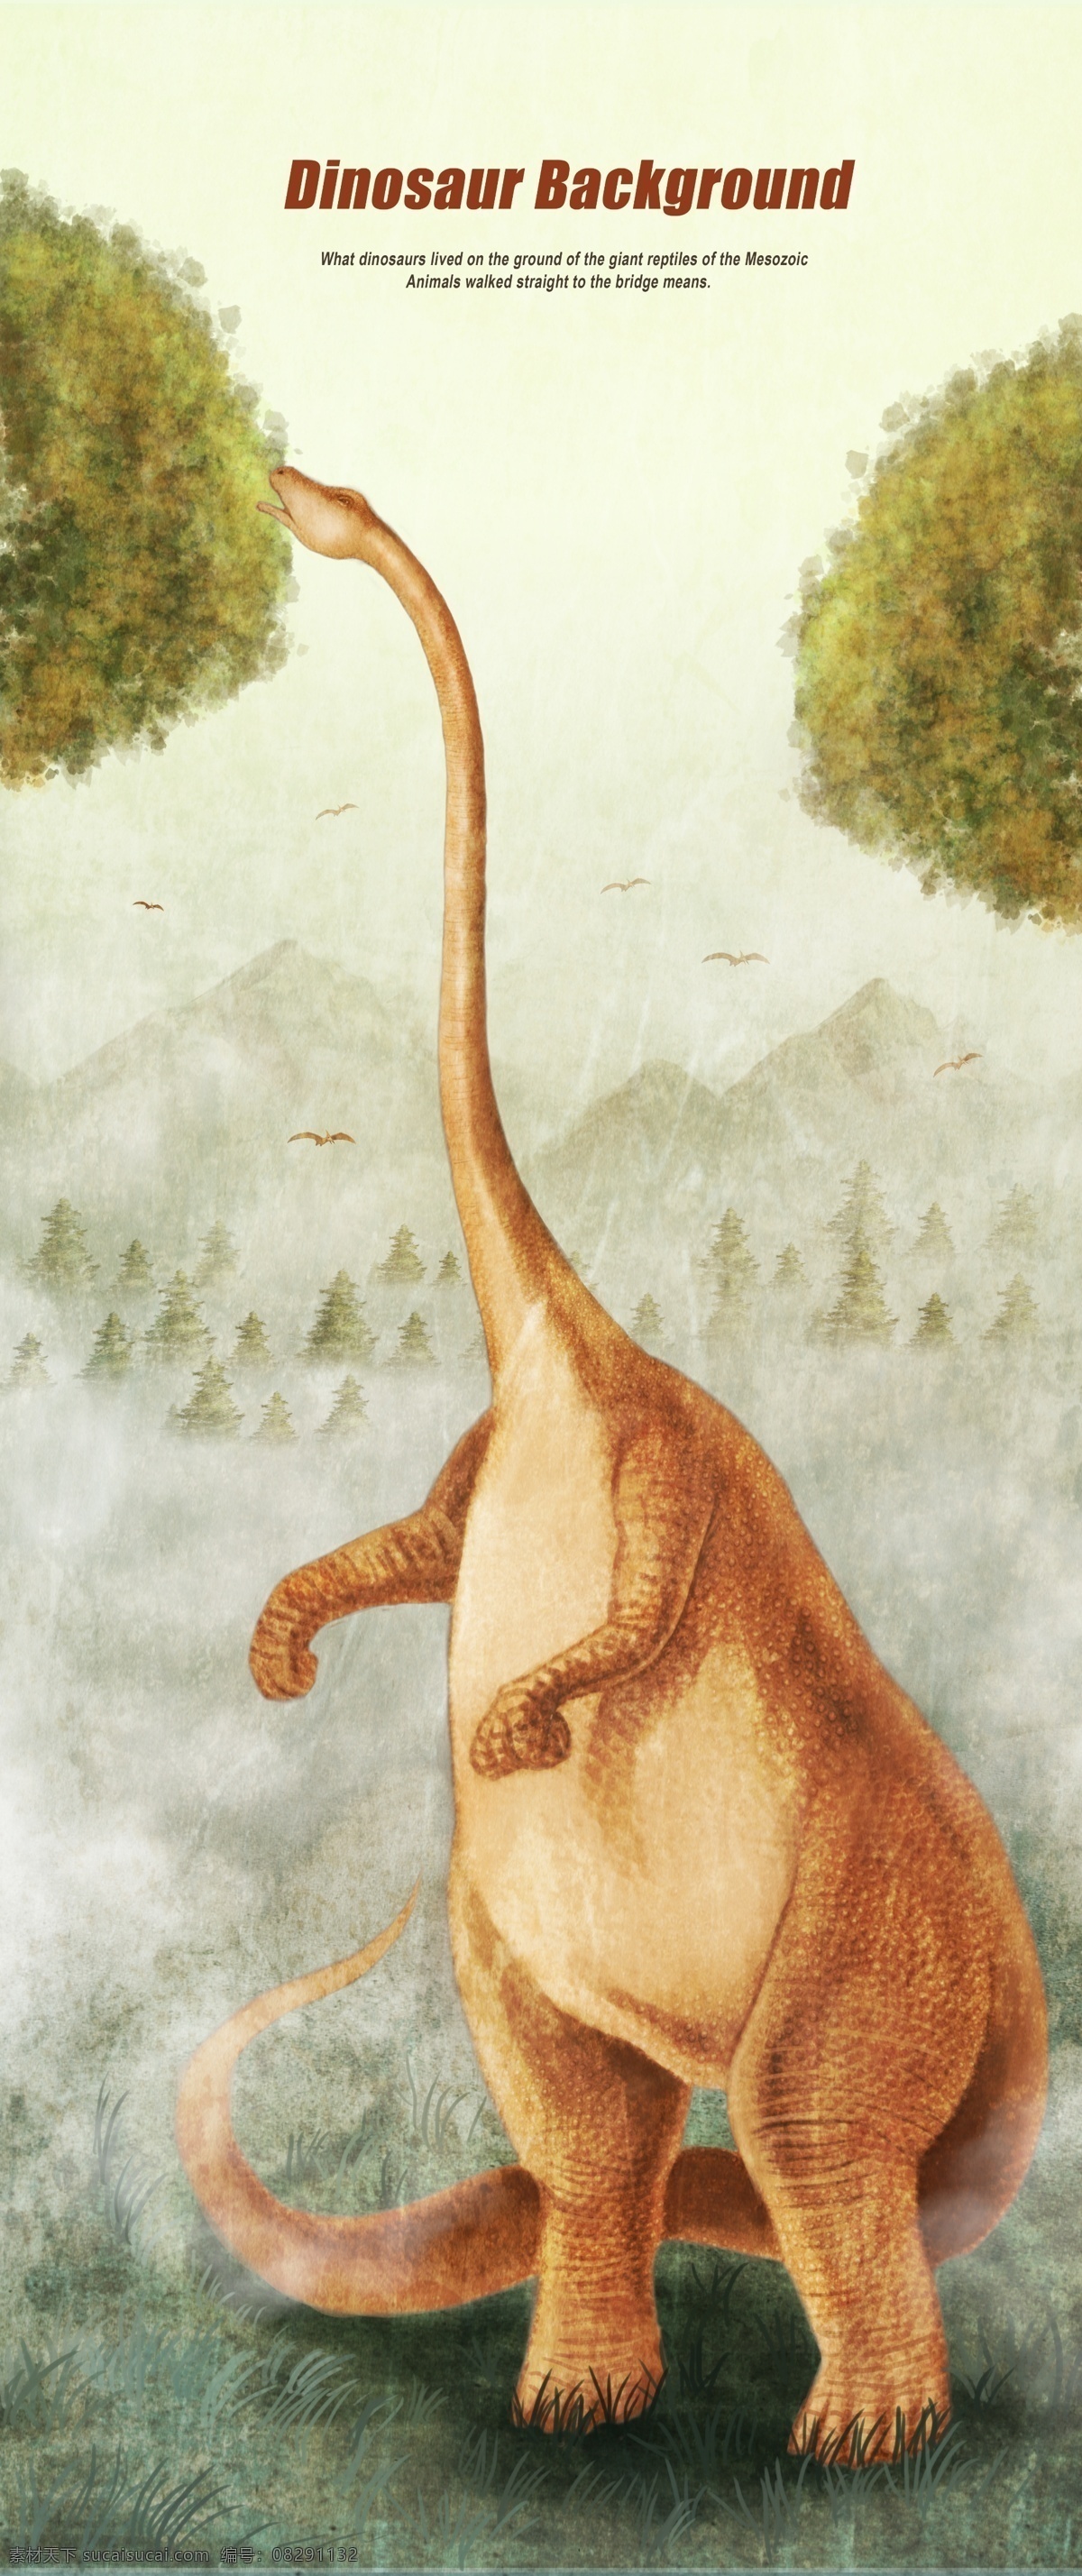 长 颈 龙 宣传 海报 恐龙素材 恐龙插画素材 惟妙惟肖恐龙 动物世界 恐龙插图 霸王龙 翼龙 恐龙 生物世界 斗争 怀旧复古 卡通动漫